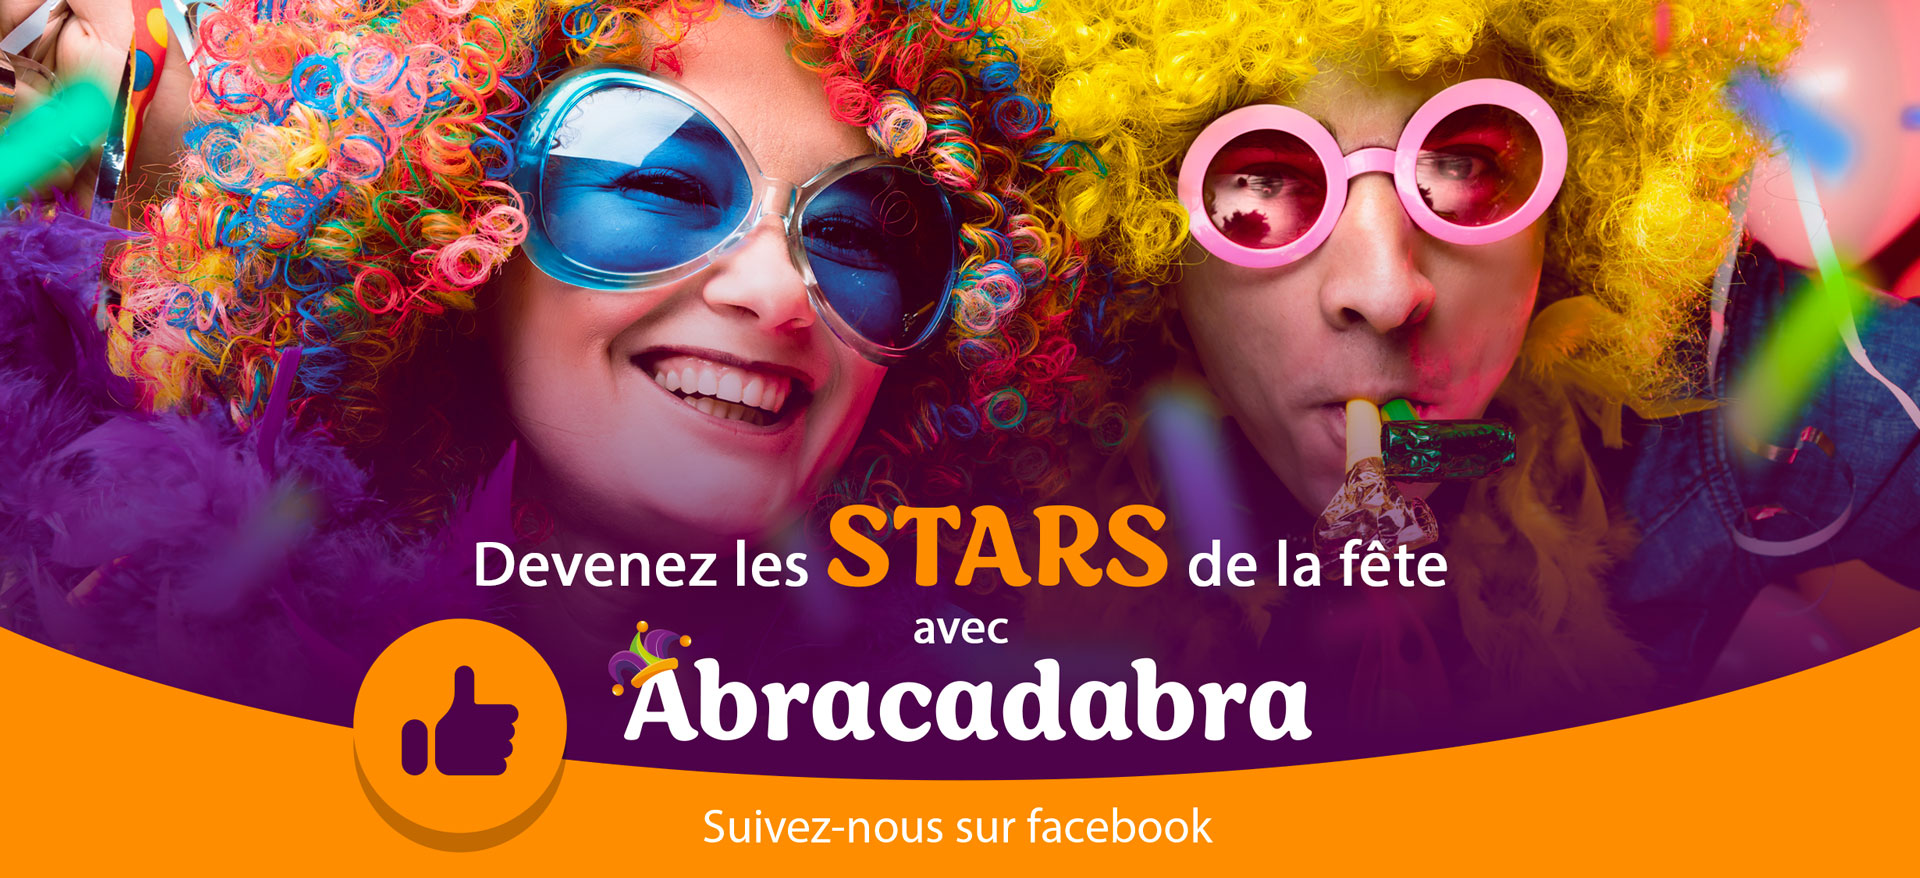 Devenez les stars de la fête avec Abracadabra. Suivez-nous sur Facebook